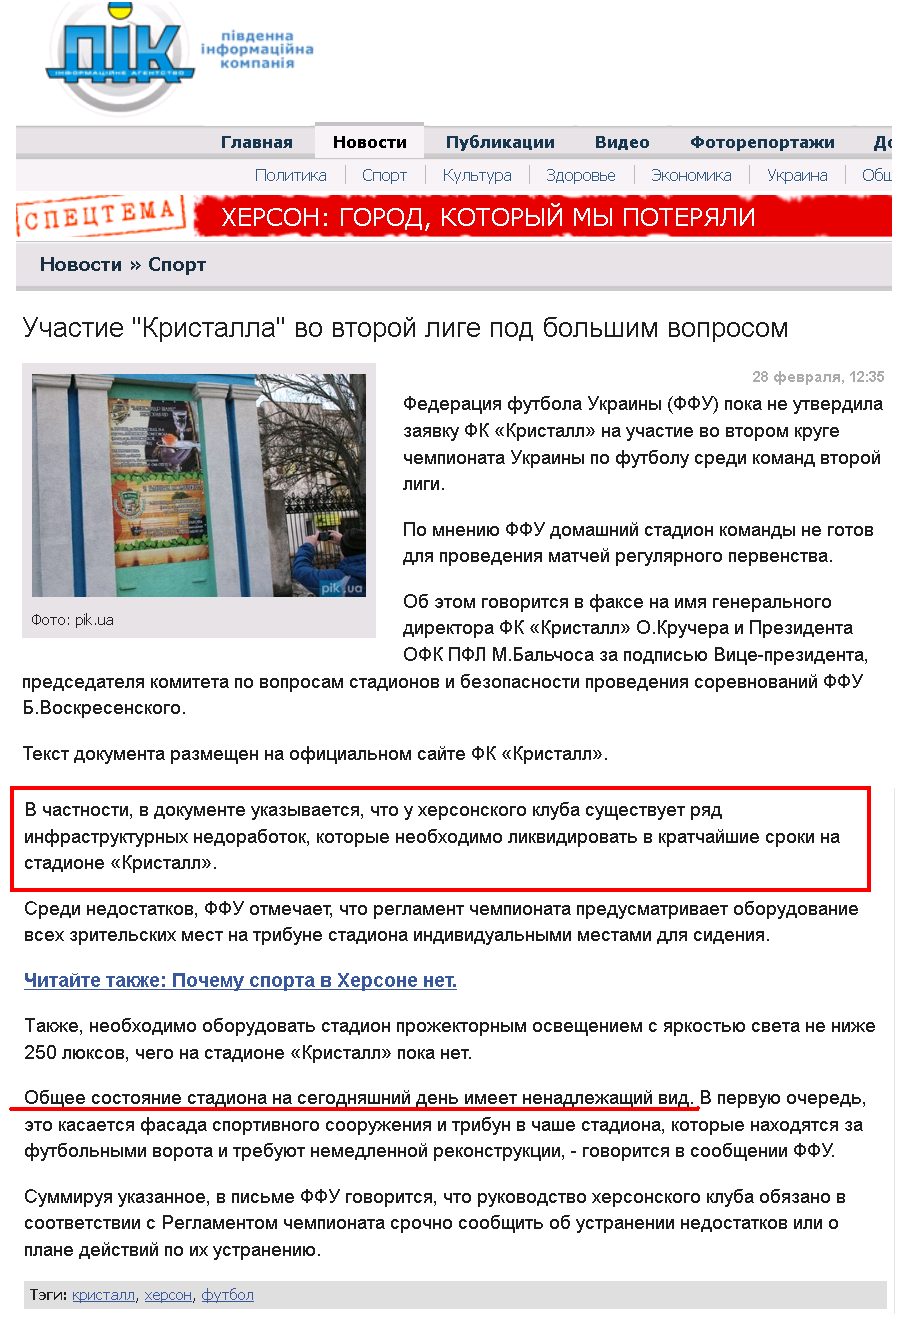 http://pik.ua/news/url/uchastie_kristalla_vo_vtoroj_lige_pod_bolshim_voprosom